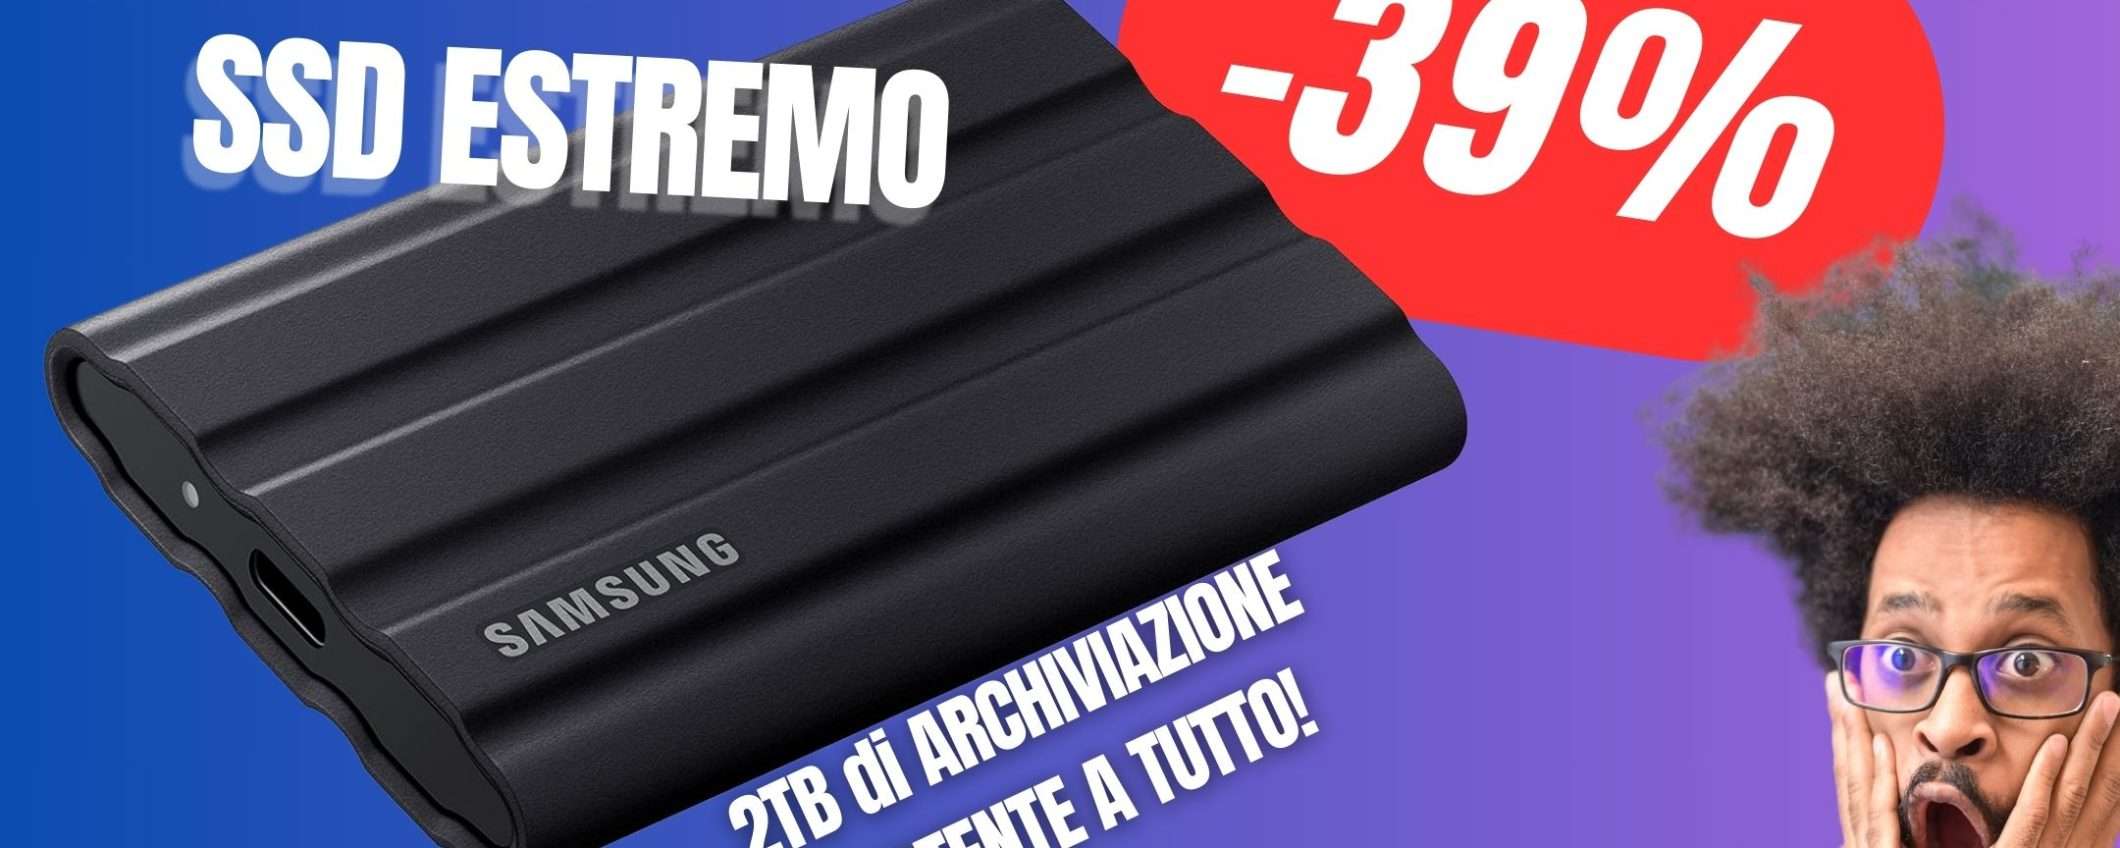 L'SSD Portatile e Indistruttibile di Samsung CROLLA con uno SCONTO del -39%!